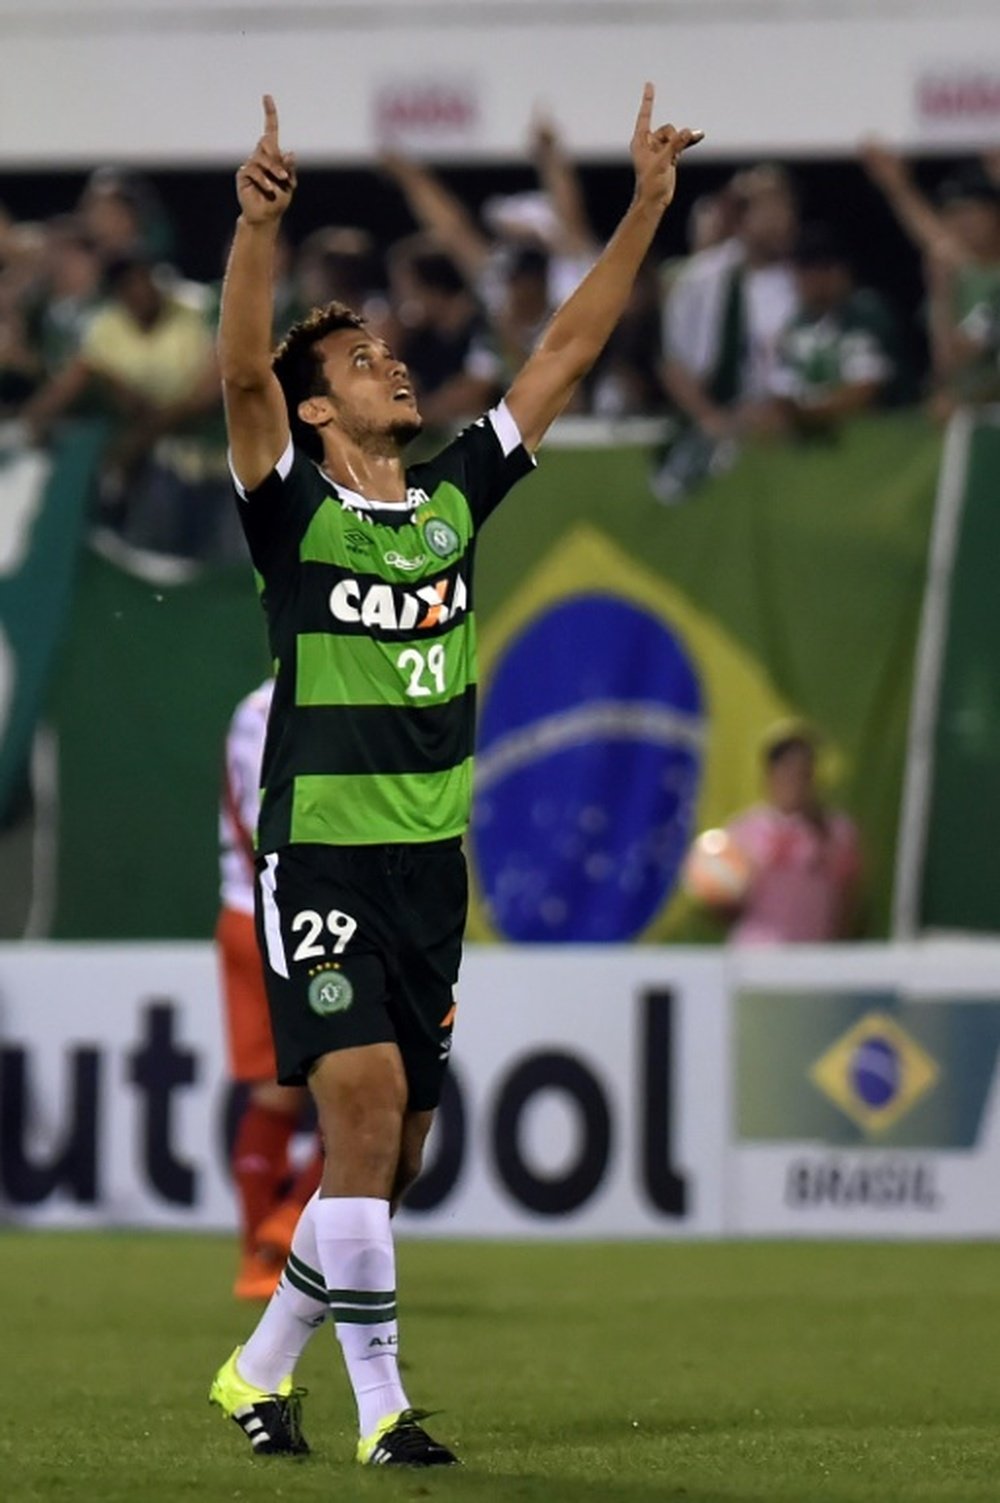 Le joueur Neto du club brésilien de Chapecoense, le 28 octobre 2015 lors d'un match contre l'Argentine, à Chapeco, au Brésil